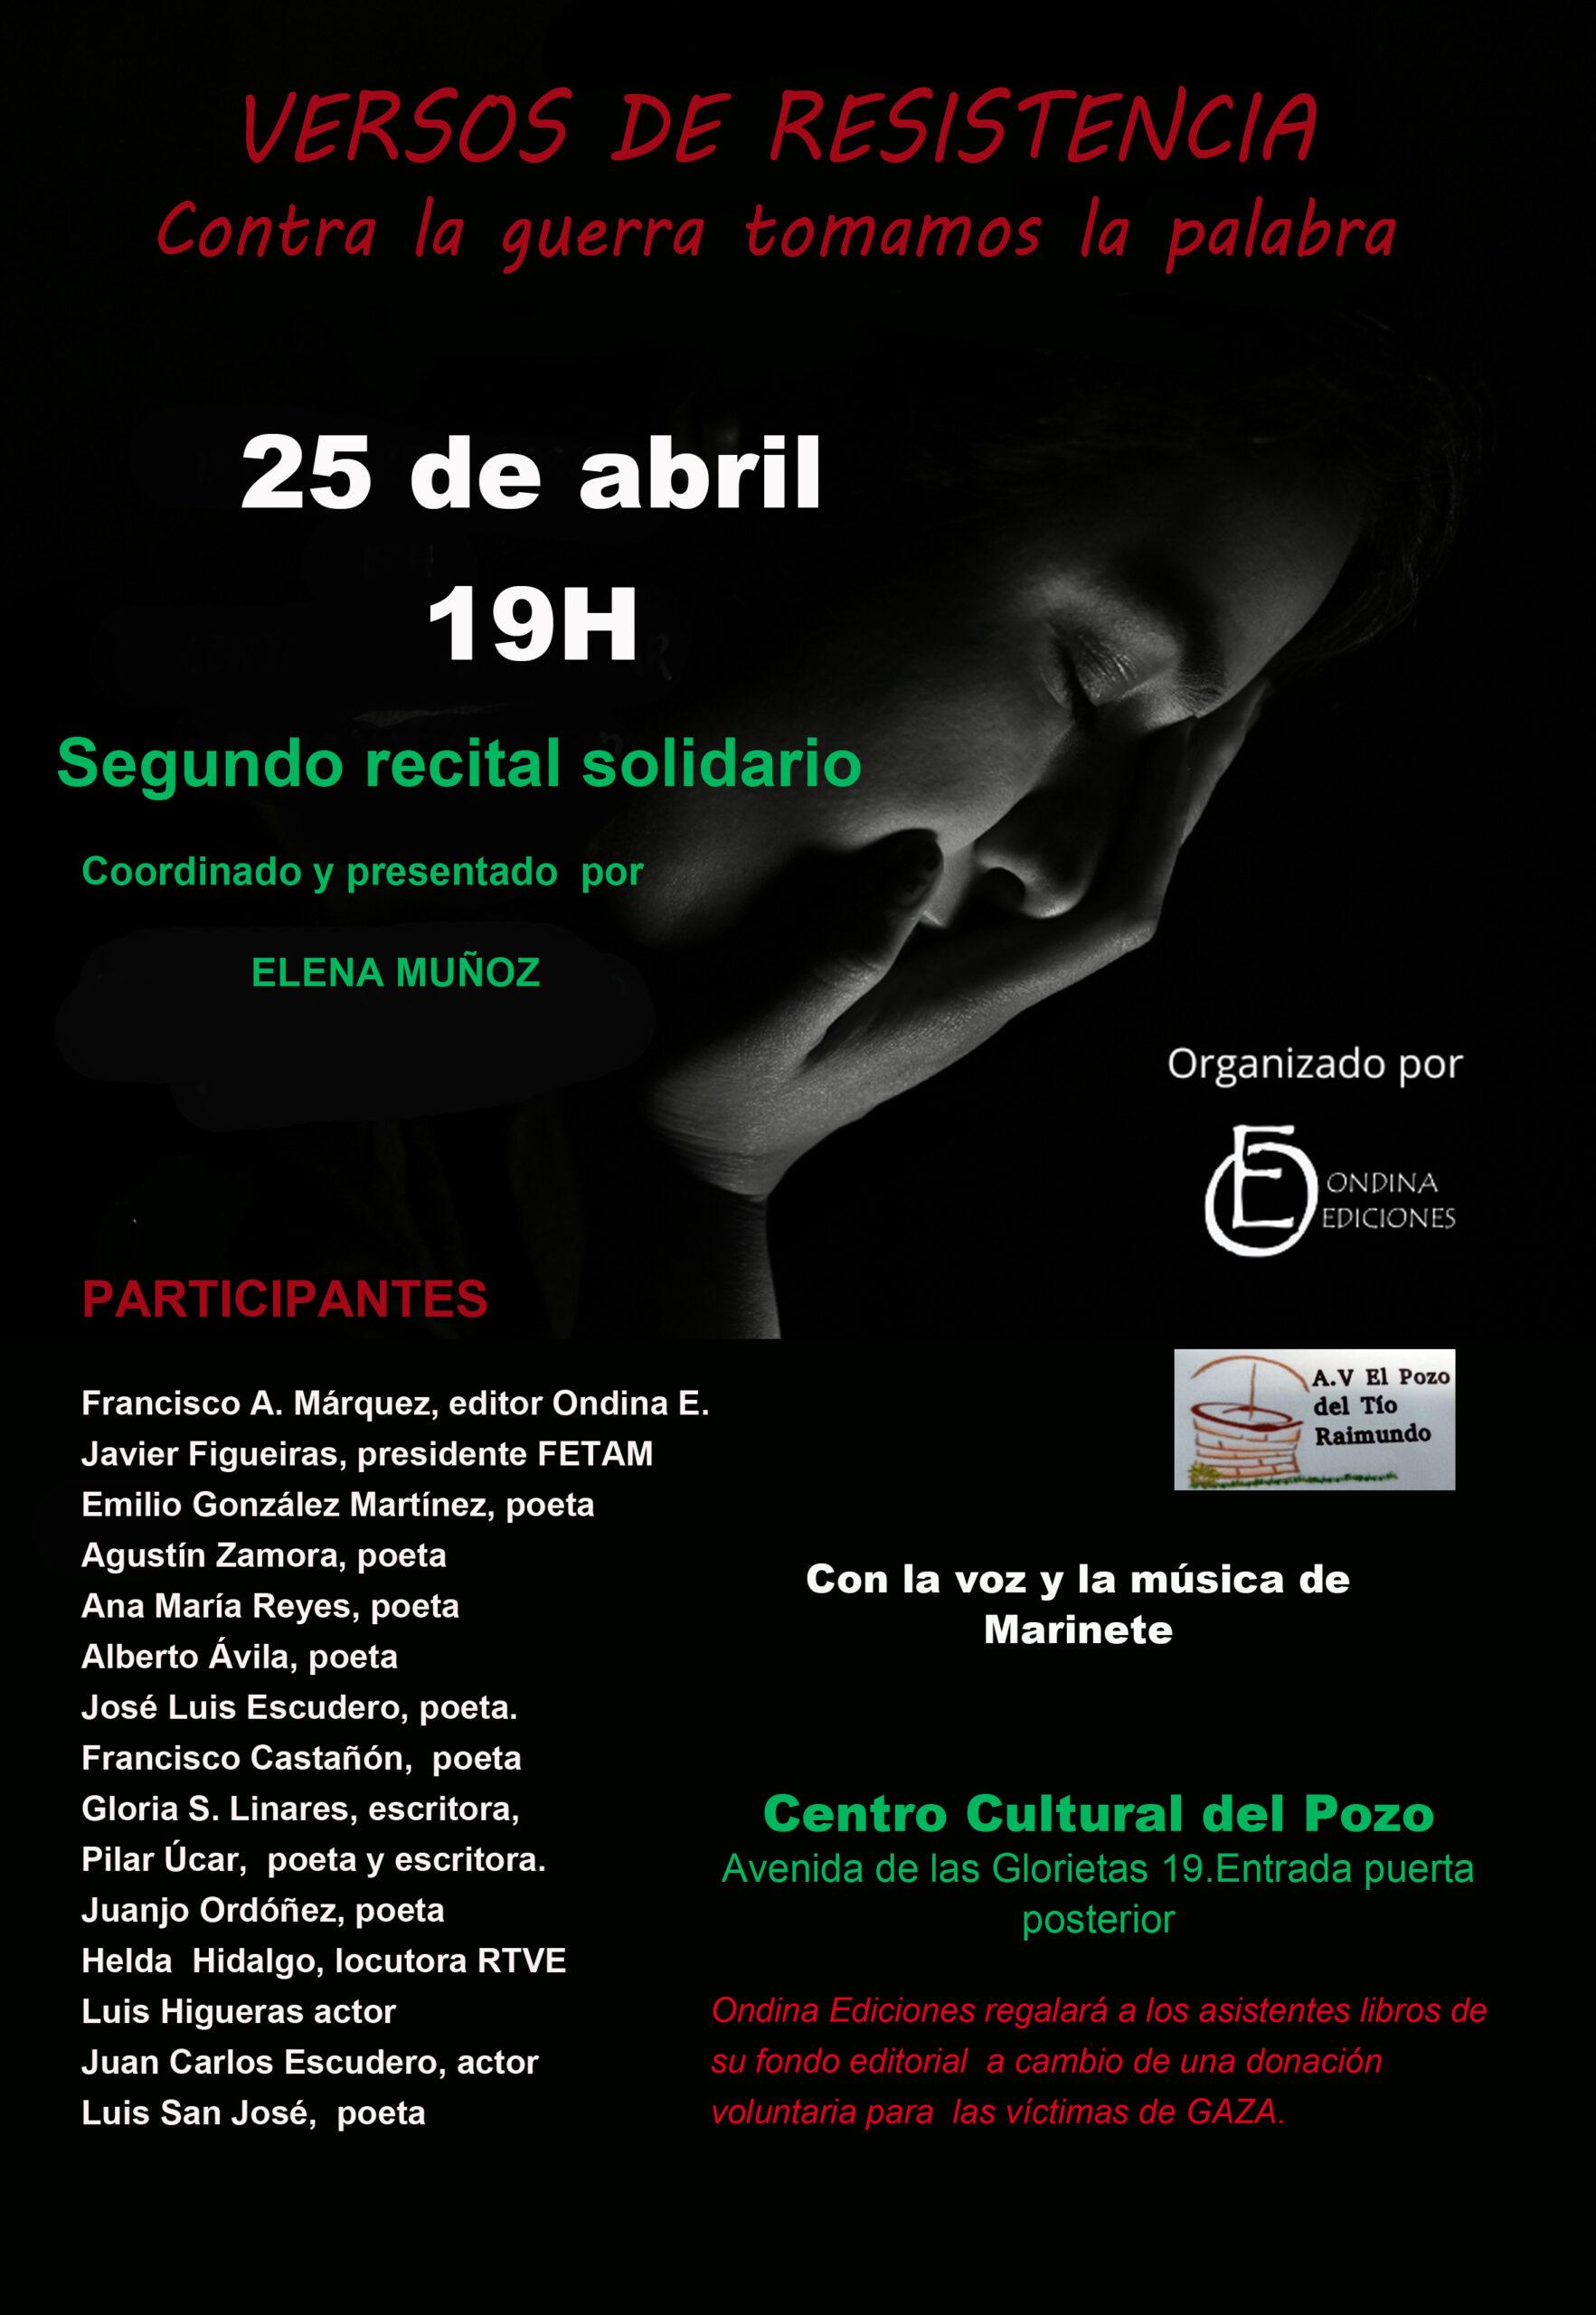 Recital ‘Versos de resistencia’ en Madrid. 25 de abril